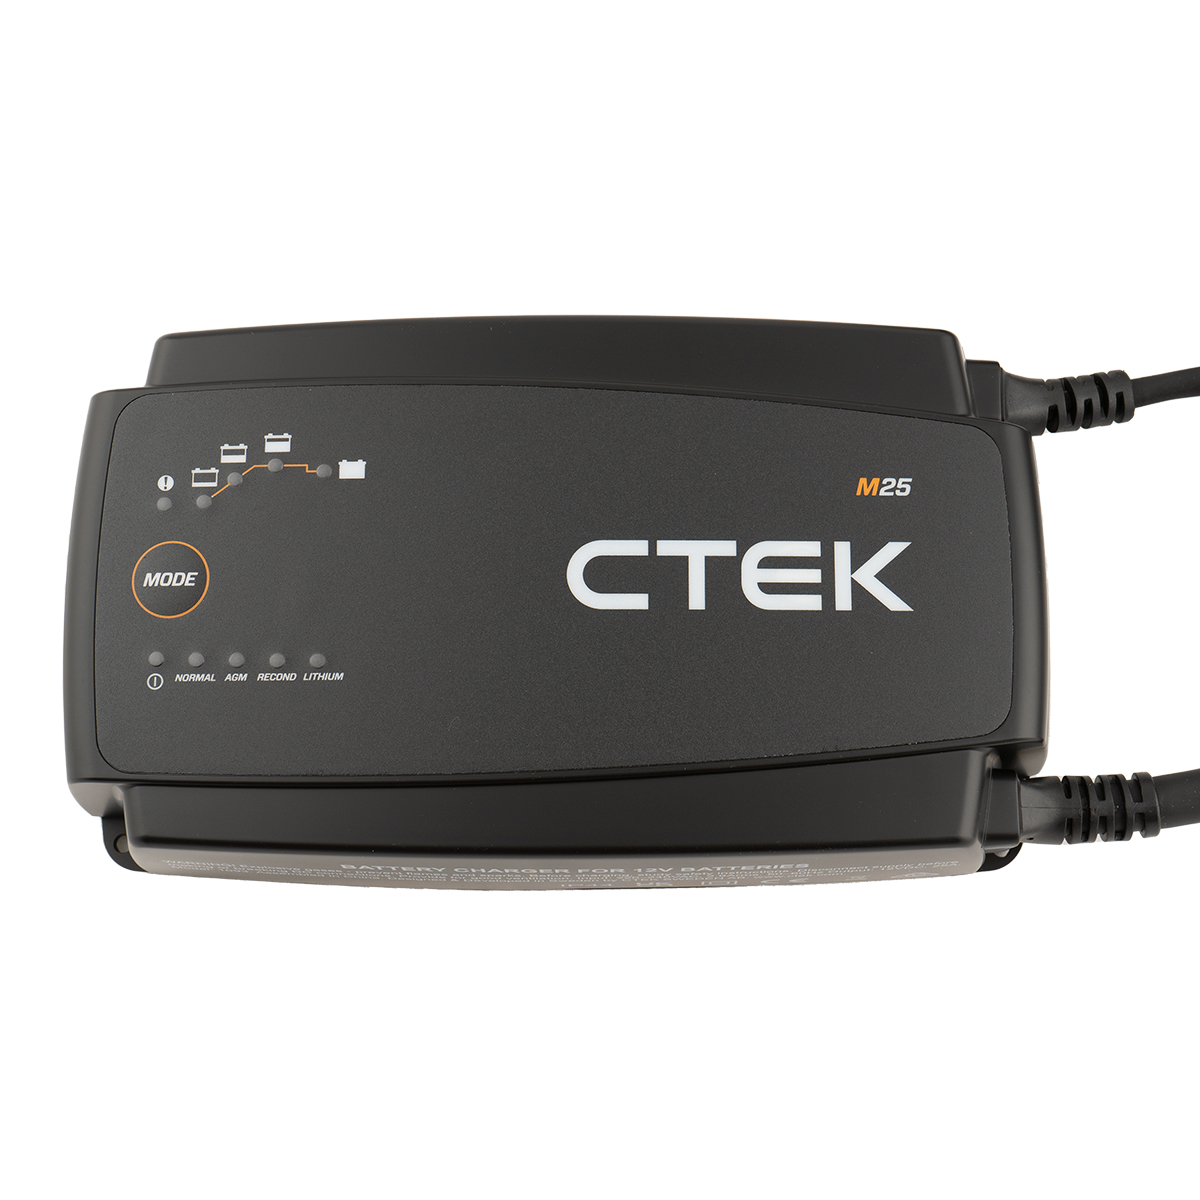 CTEK M25 EU Batterie Ladegerät 12V 25A Blei- und Lithium Batterien